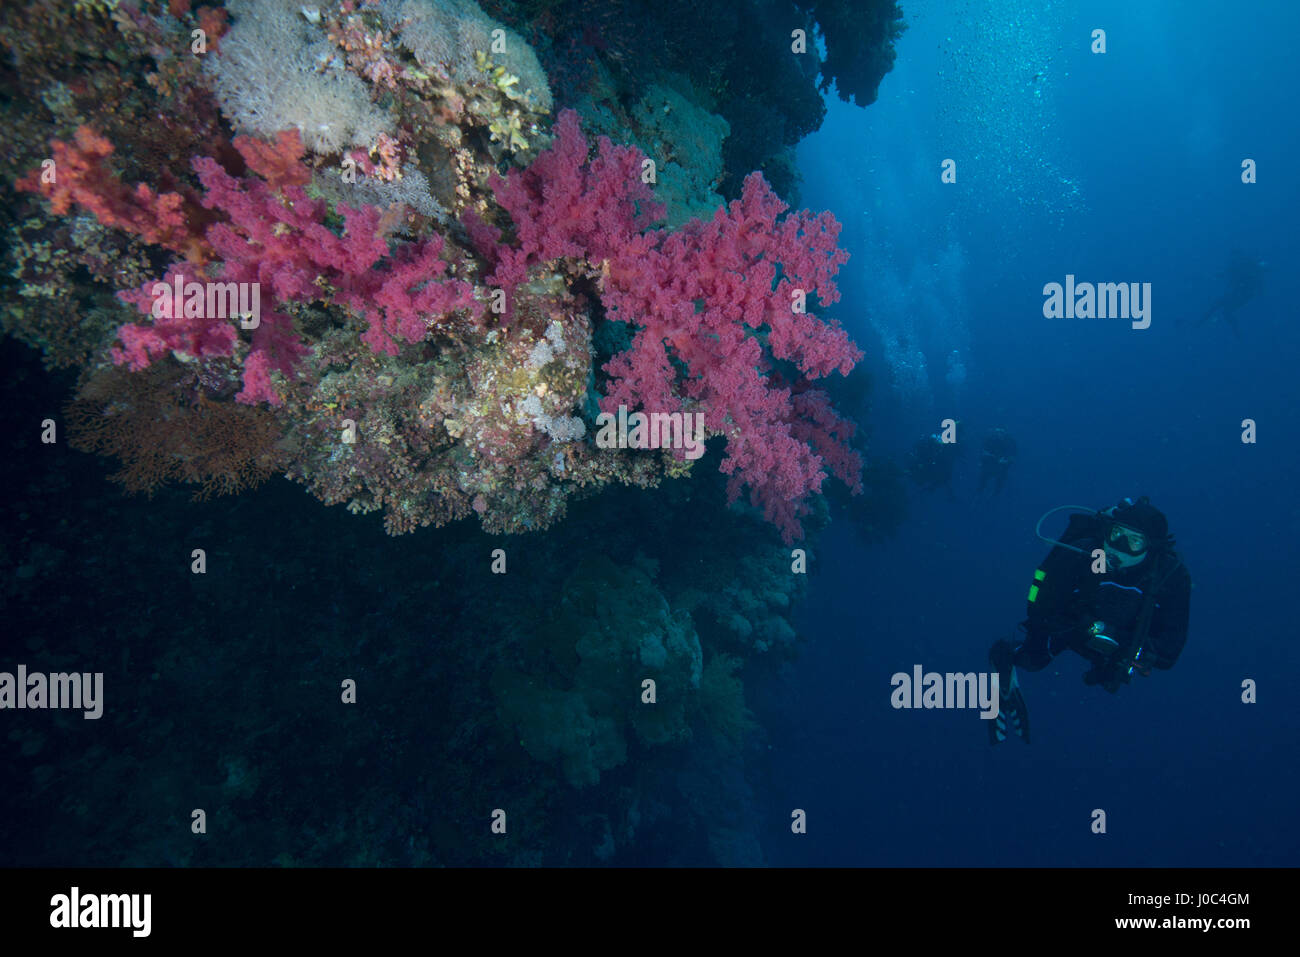 Scuba diver by coral, Red Sea, Marsa Alam, Egypt Stock Photo